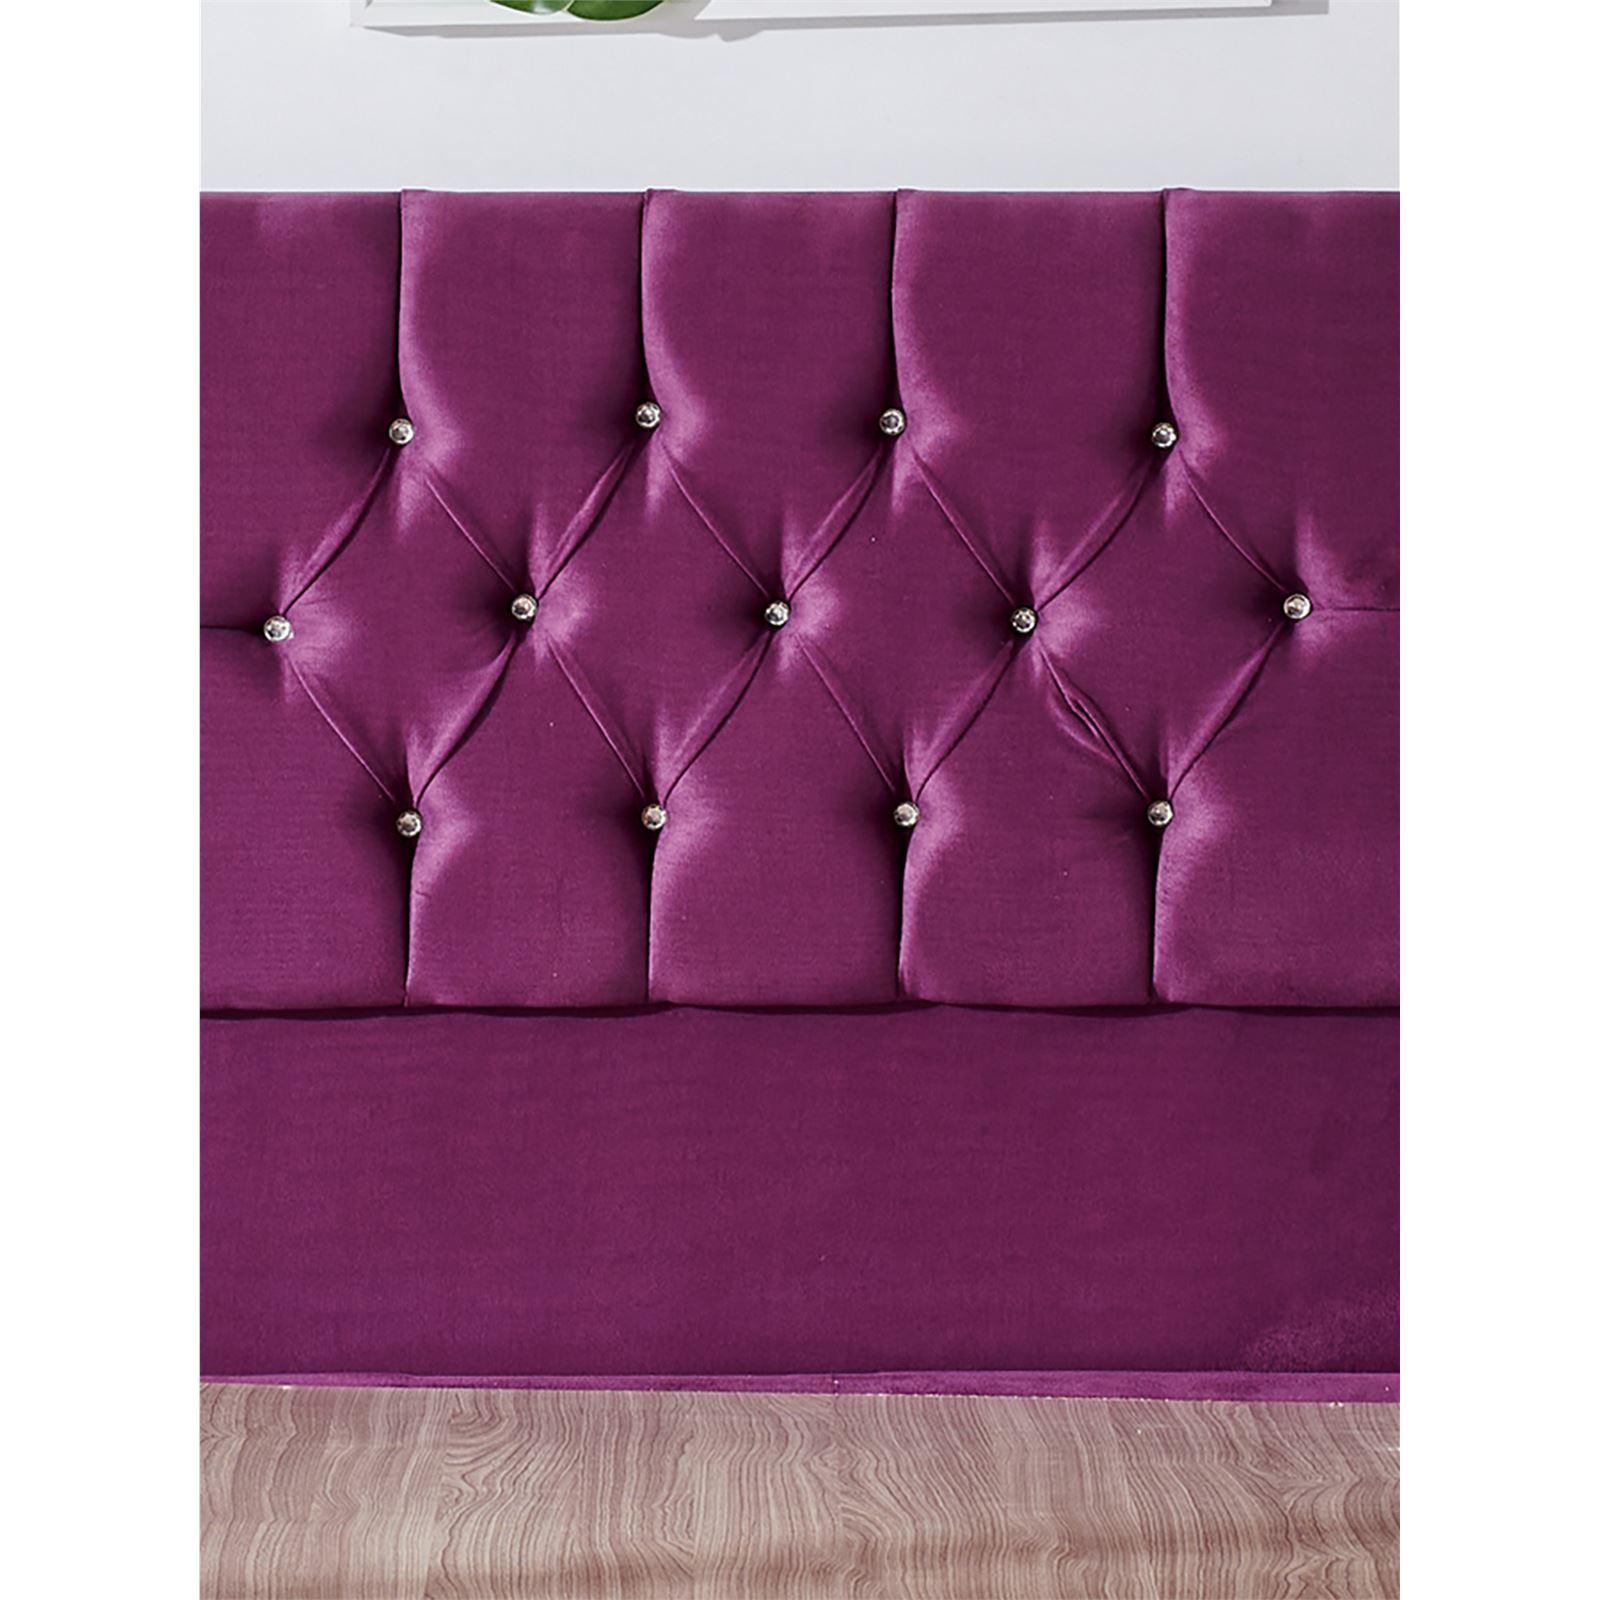 Niron Violet Yatak Seti 90x200 cm Tek Kişilik Yatak Baza Başlık Takımı Orta Sert Yatak Baza ve Başlığı Mor